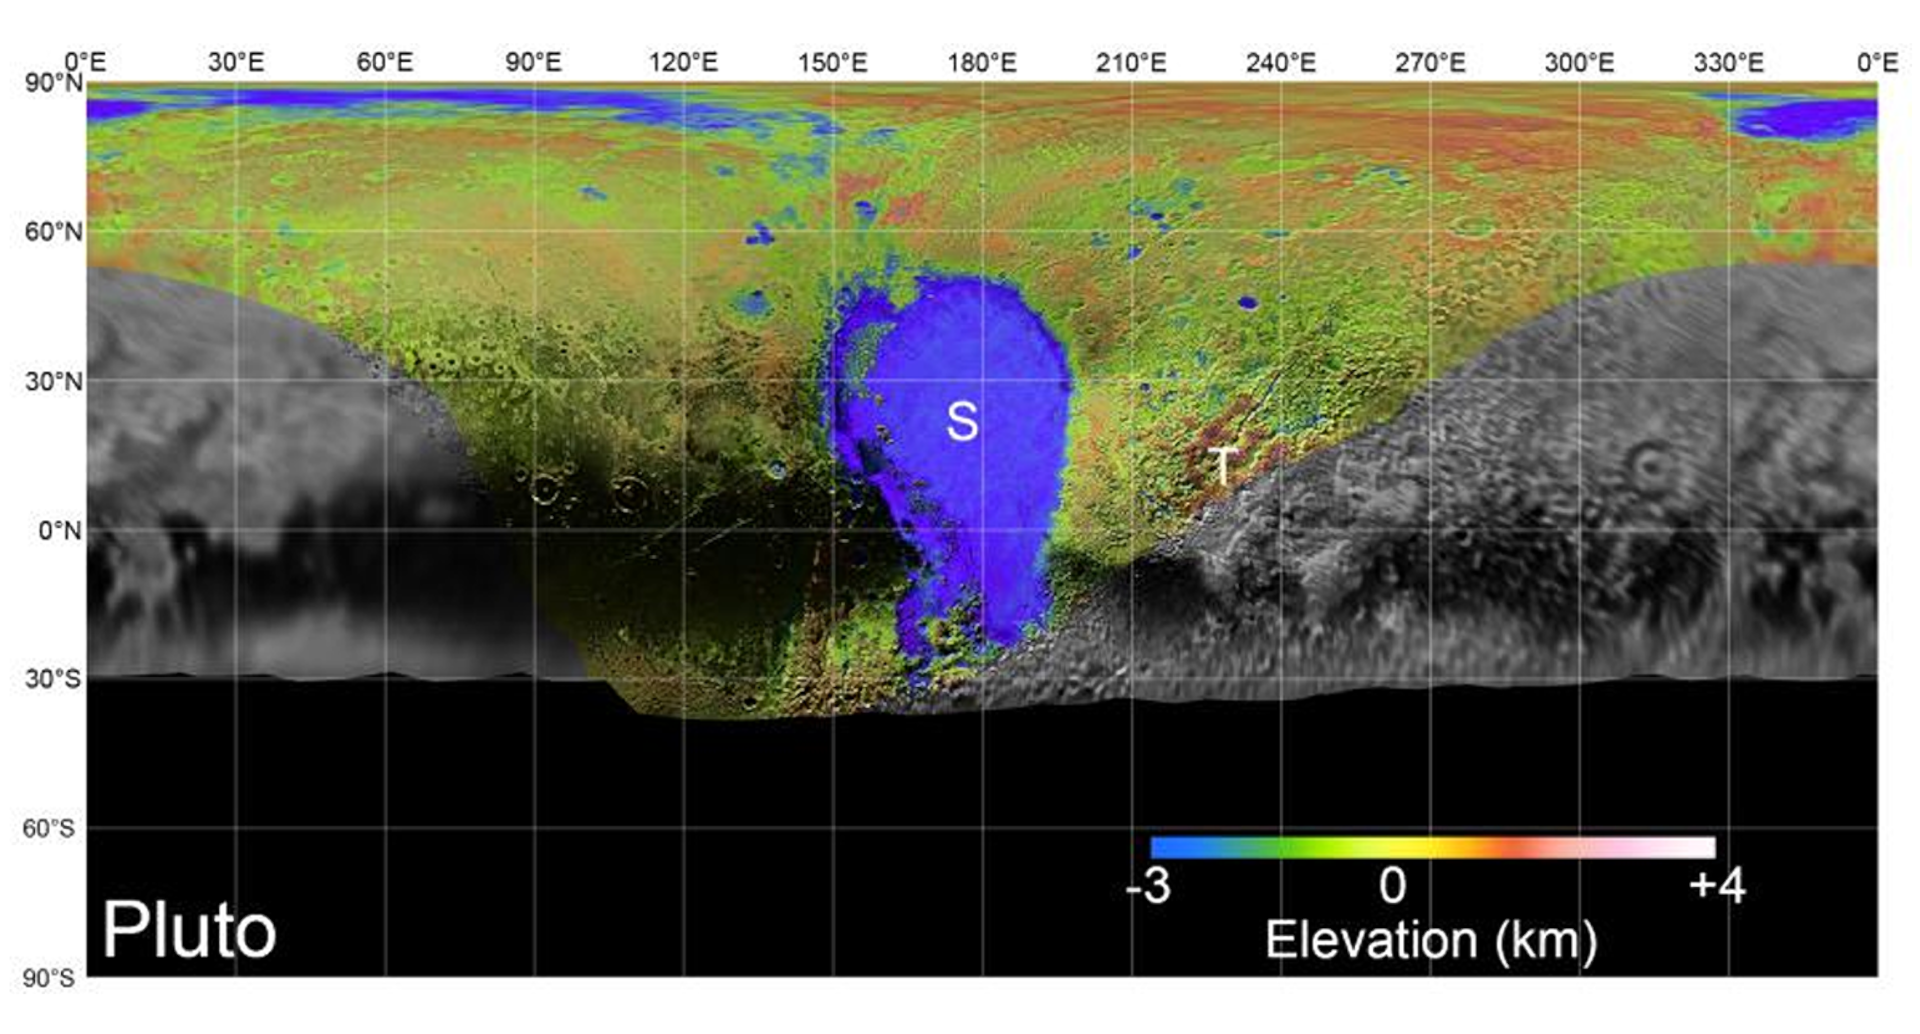 Rys. 11. Zdjęcie poglądowe przedstawia topograficzną mapę planety Pluton. Kolorami zaznaczono obszary o różnych wysokościach. Kolor niebieski oznacza najniższe wysokości do minus 3 kilometrów poniżej powierzchni planety, przez zielenie, żółcie, pomarańczowy, czerwień, aż do bieli oznacza wysokość 4 kilometrów powyżej  powierzchni planety. W centralnej części mapy znajduje się niebieski fragment oznaczony wielką literą S – to biegun południowy Plutona. Kolorem szarym oznaczono tereny niezbadane.